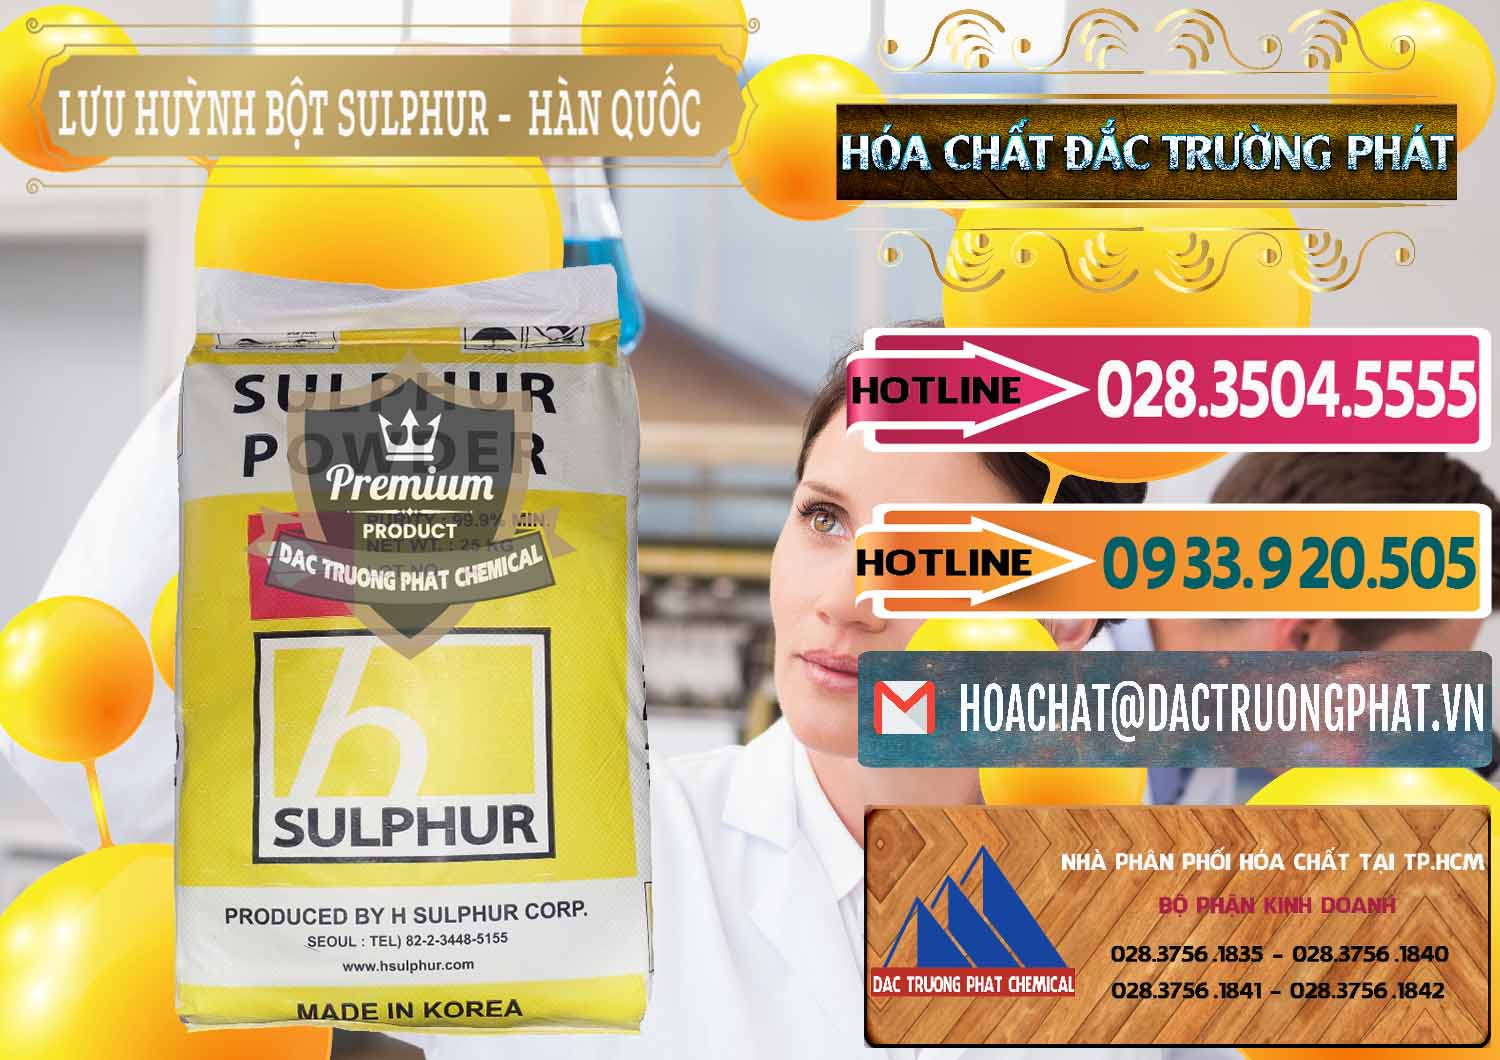 Công ty chuyên bán _ cung ứng Lưu huỳnh Bột - Sulfur Powder ( H Sulfur ) Hàn Quốc Korea - 0199 - Cung ứng và phân phối hóa chất tại TP.HCM - dactruongphat.vn